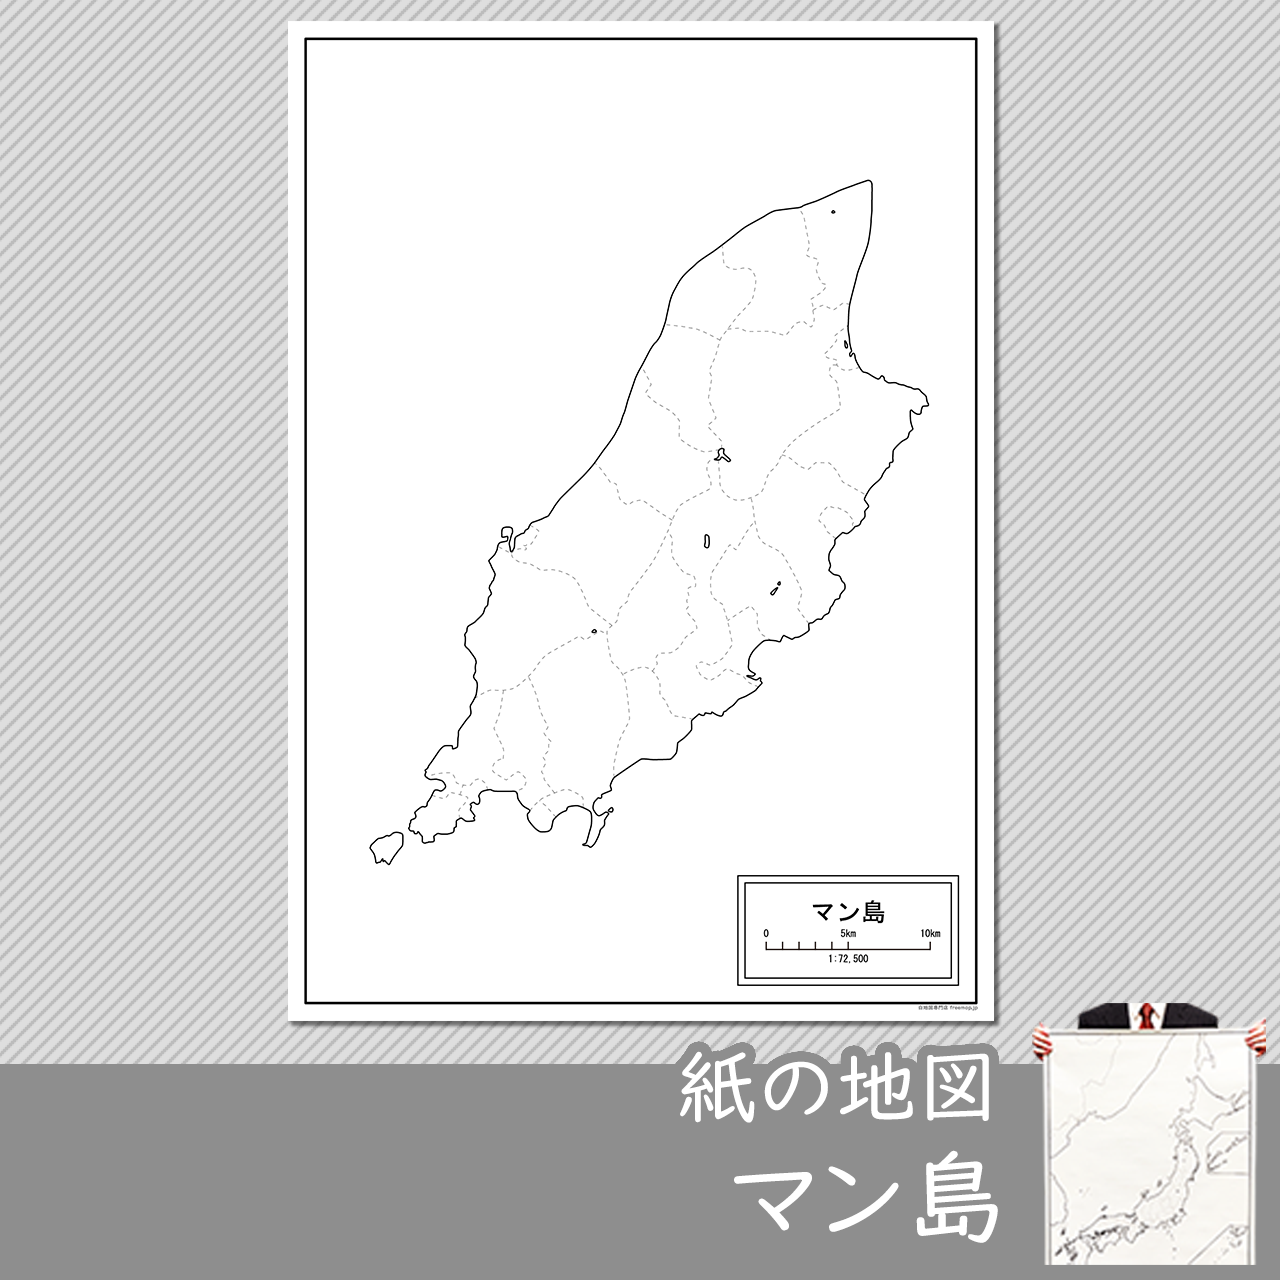 マン島の紙の白地図のサムネイル